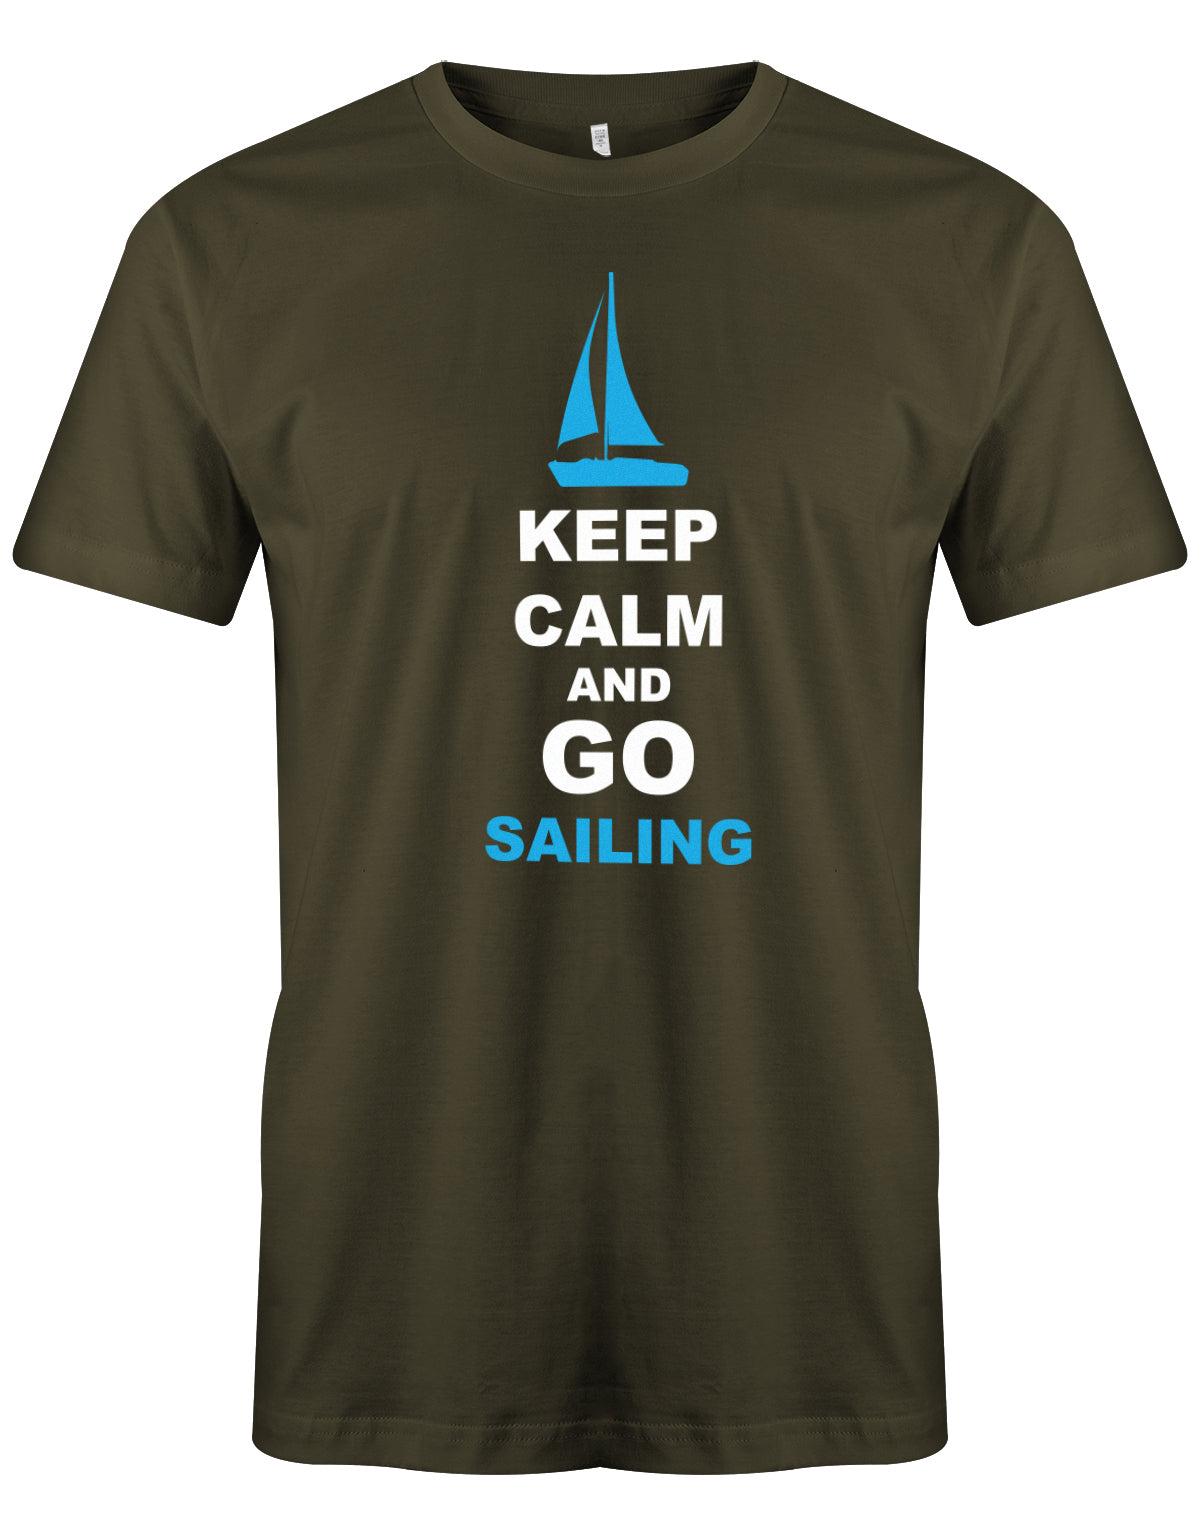 Das Segler t-shirt bedruckt mit "Keep Calm and go sailing - Bleiben Sie ruhig und gehen segeln". Army